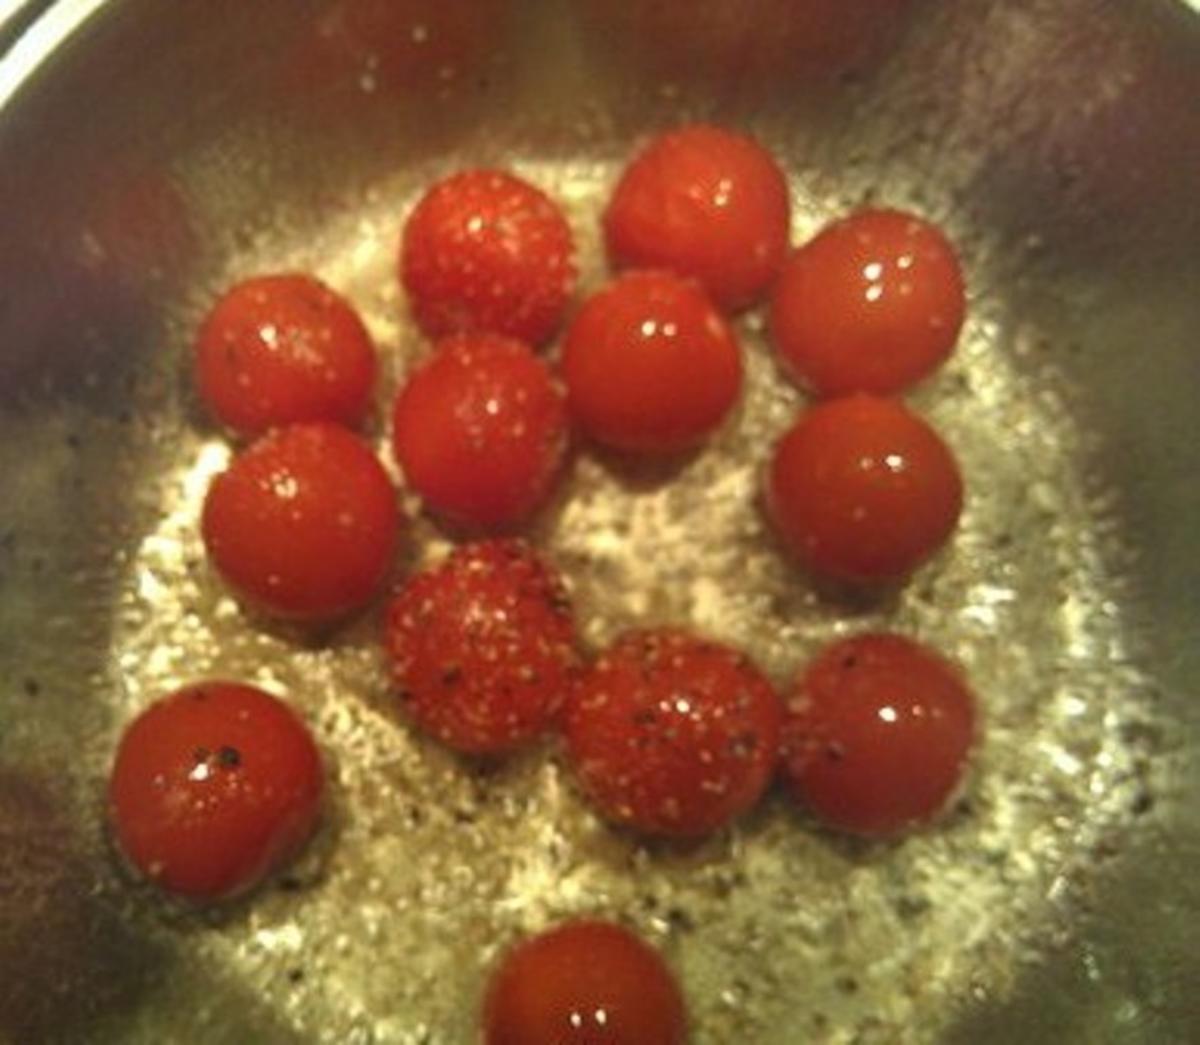 Gurkensalat als Gurkenspaghetti mit karamelisierten Cherrytomaten - Rezept - Bild Nr. 10